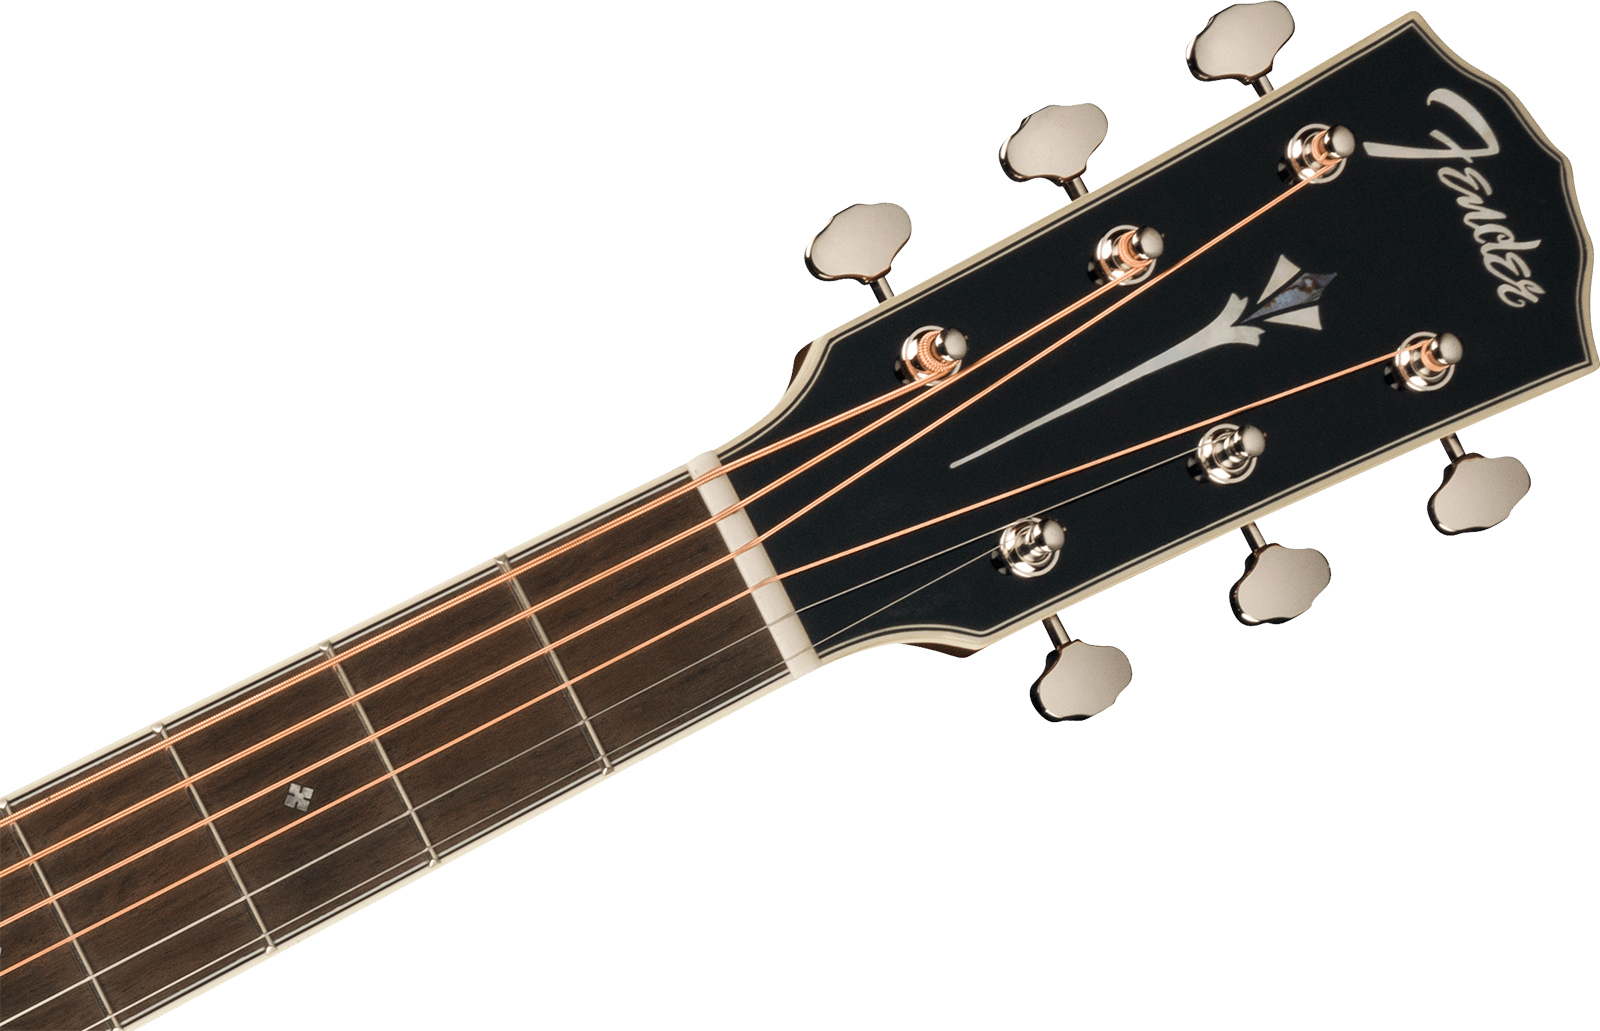 Fender Po-220e Paramount Fsr Ltd Orchestra Model Om Epicea Ovangkol Ova - Aged Natural - Guitare Electro Acoustique - Variation 3